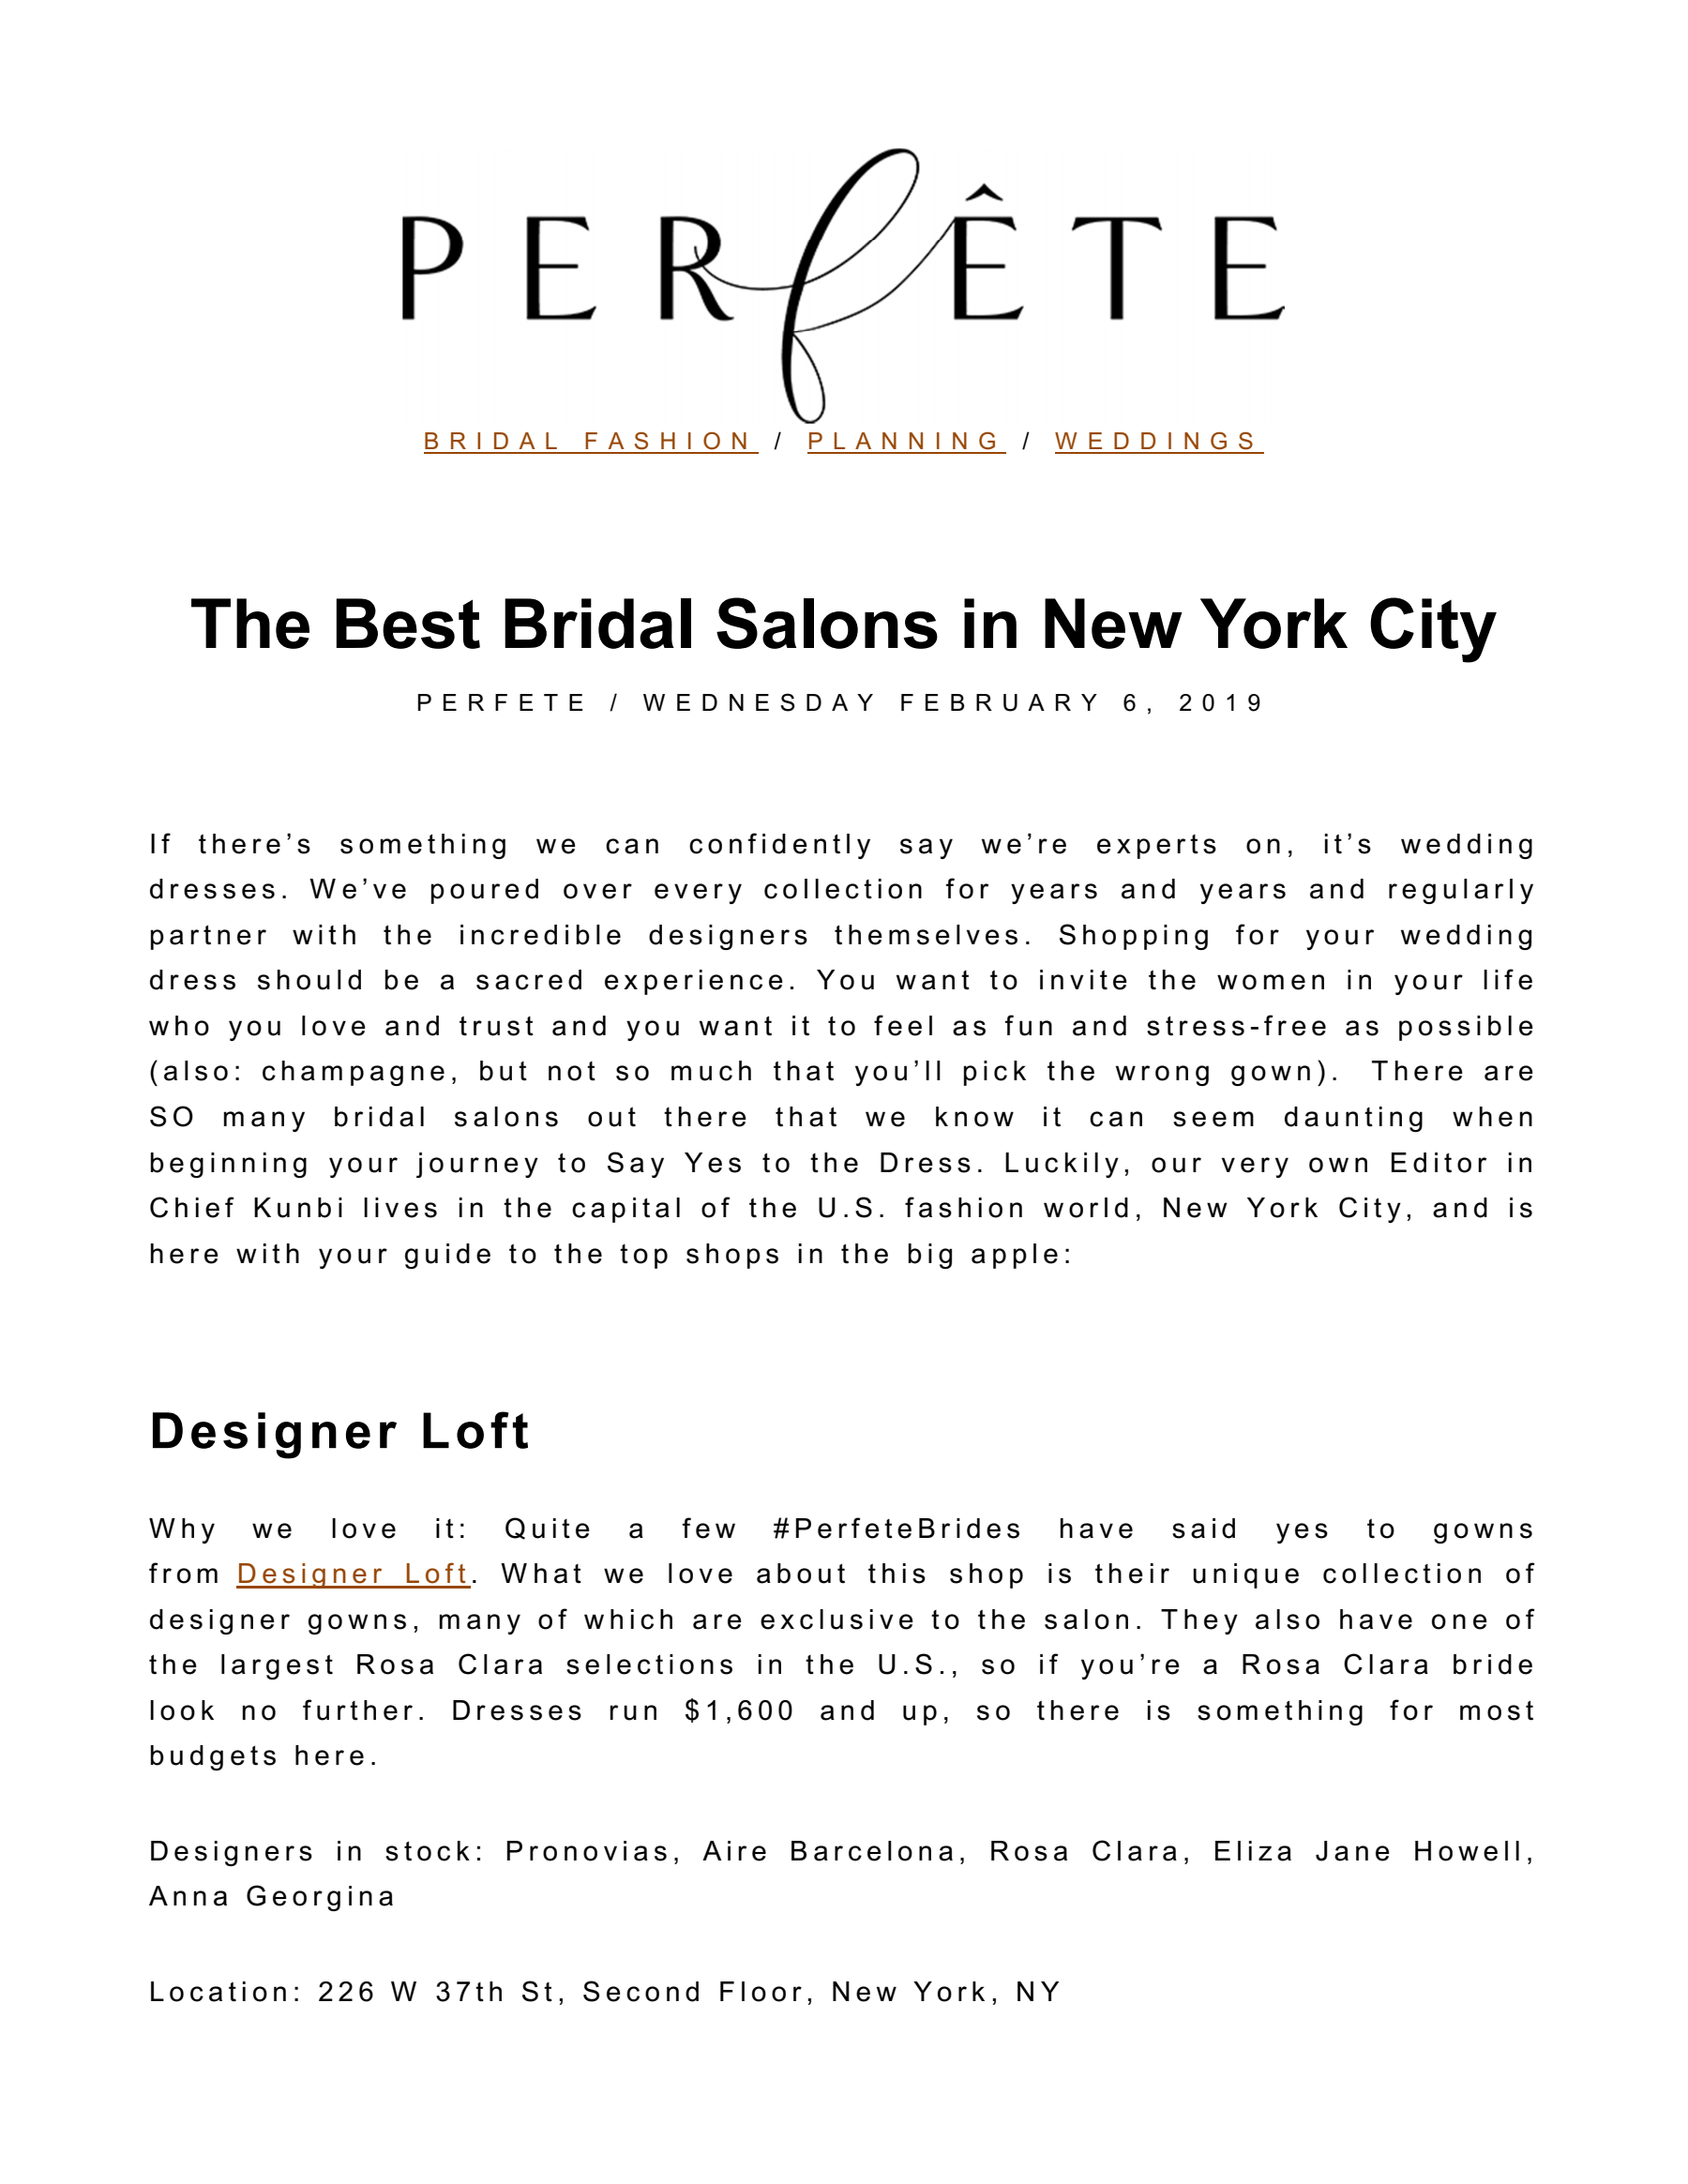 PERFETE Best Bridal Salons